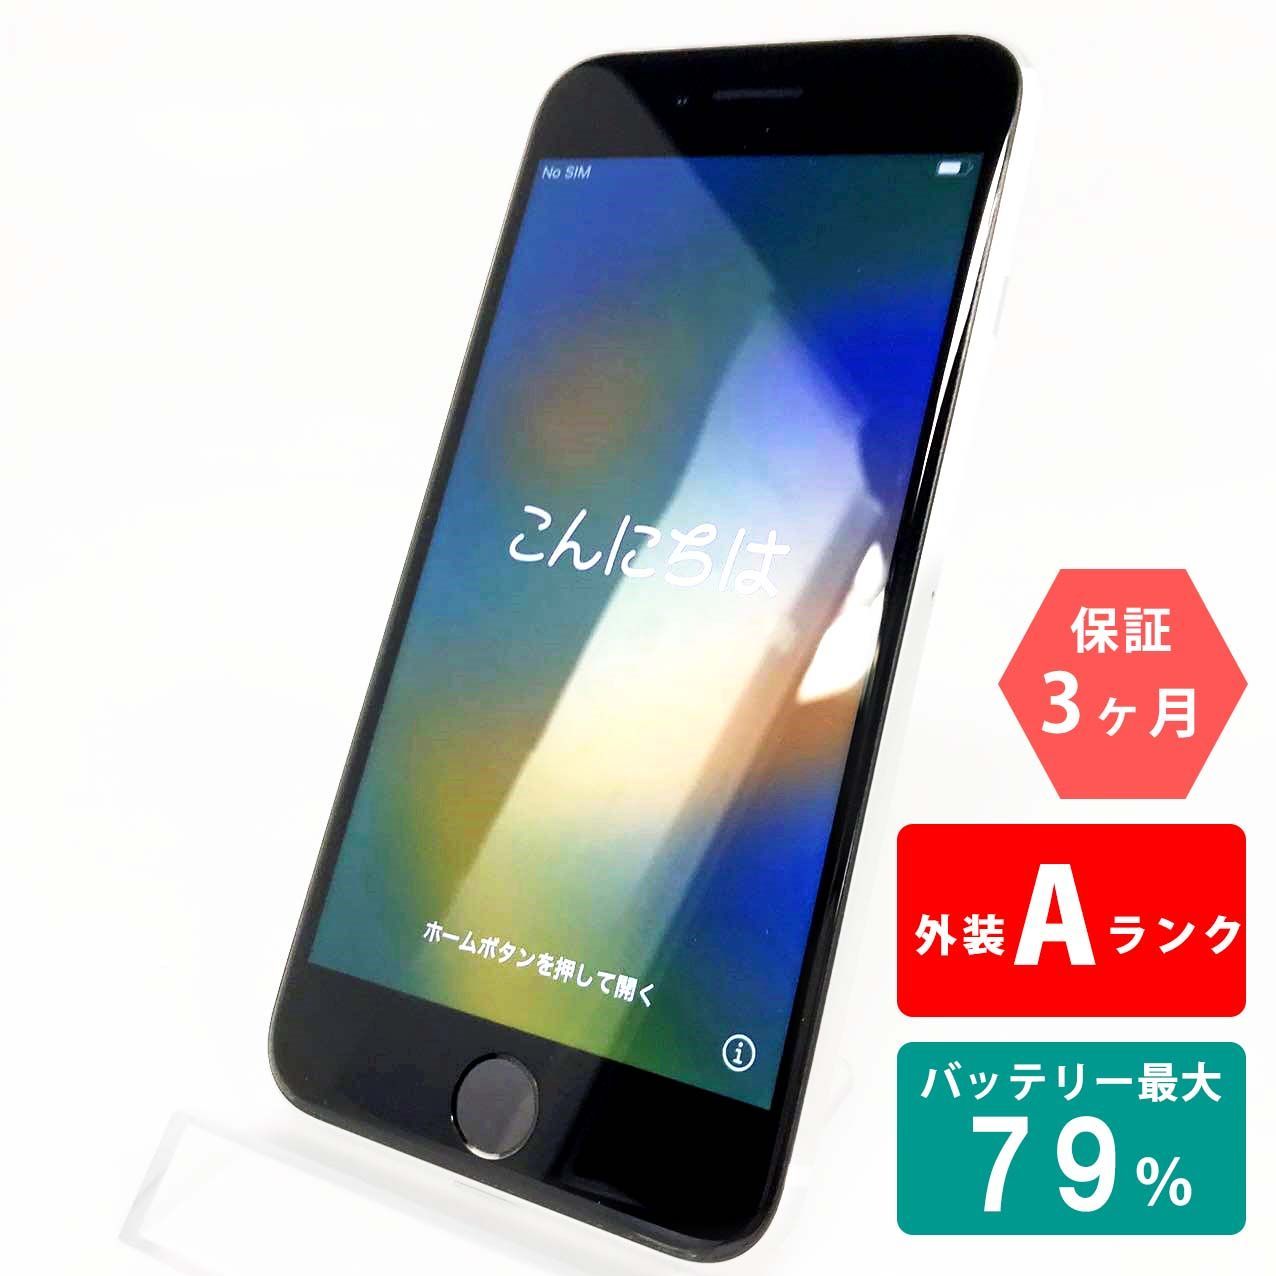 iPhone SE(第2世代) 64GB ホワイト Aランク 超美品 SIMフリー Apple